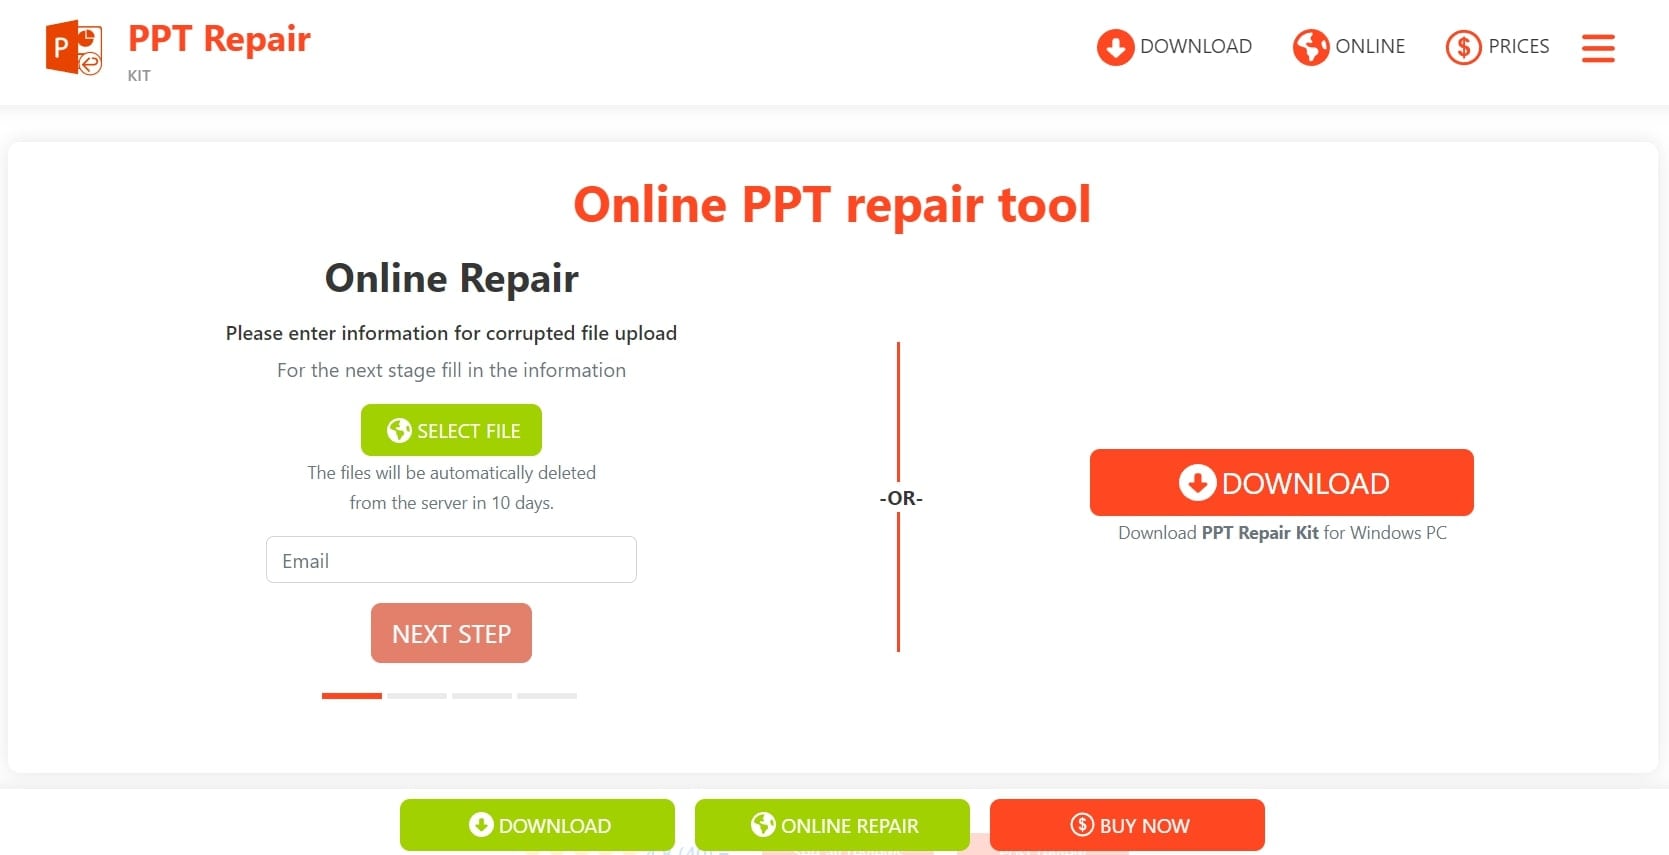 ppt repair kit